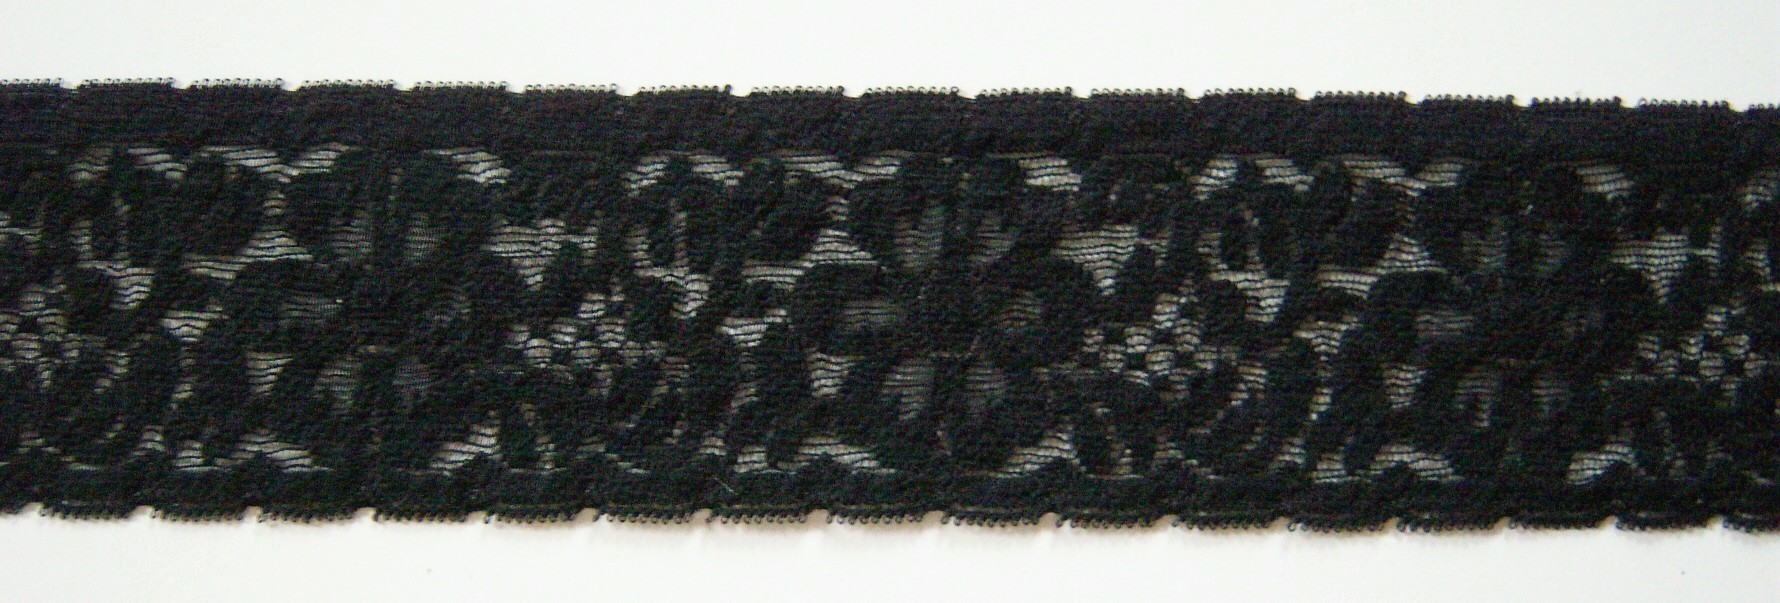 Black 2 5/8" Stretch Lace